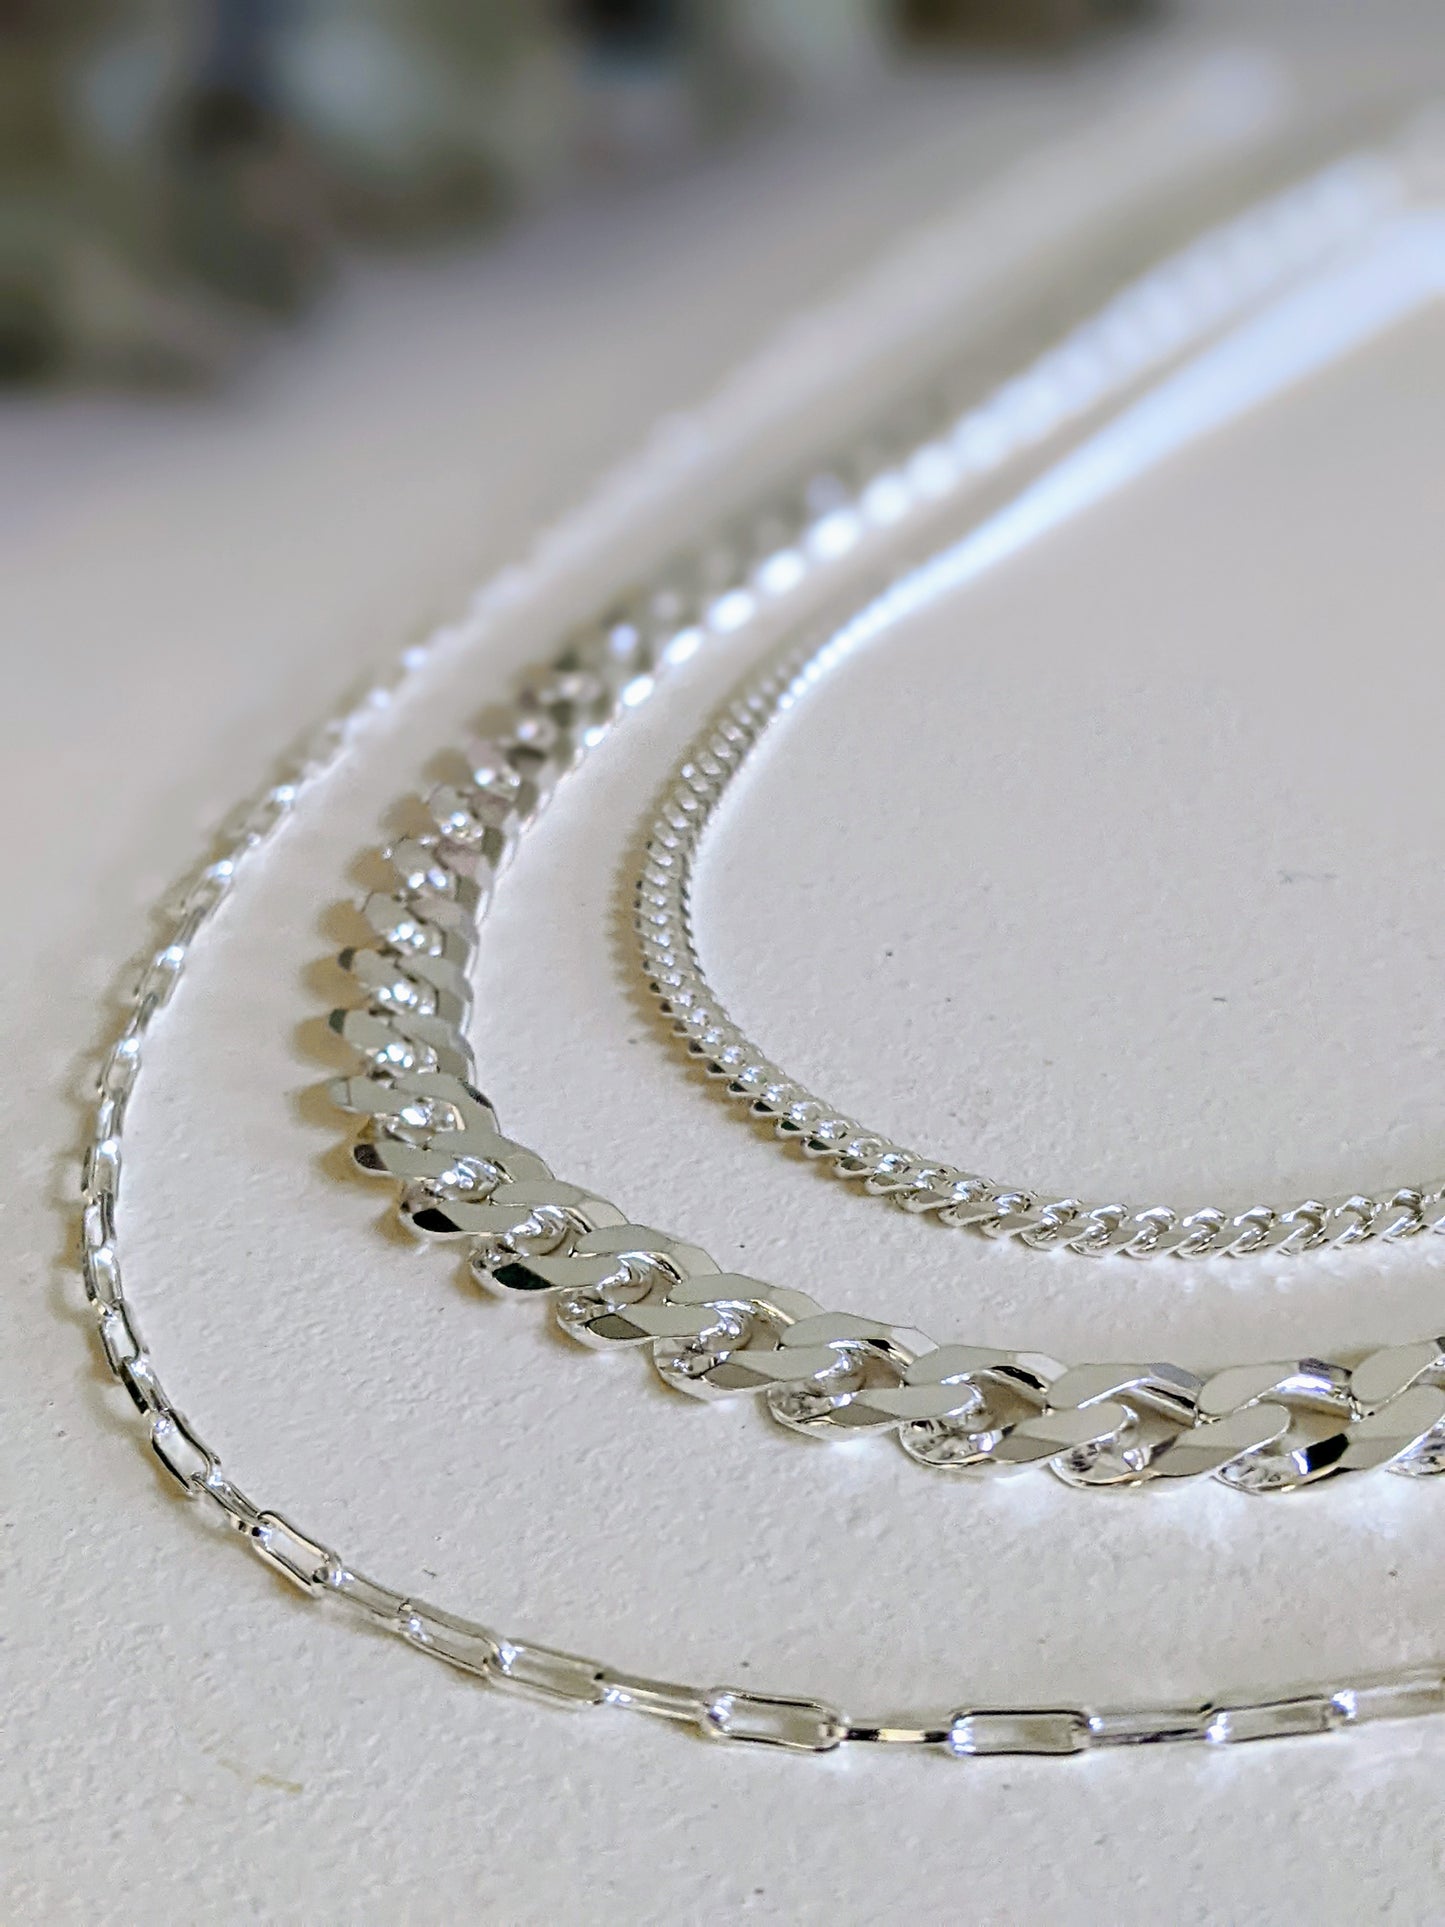 Mini Paperclip Silver Chain Necklace